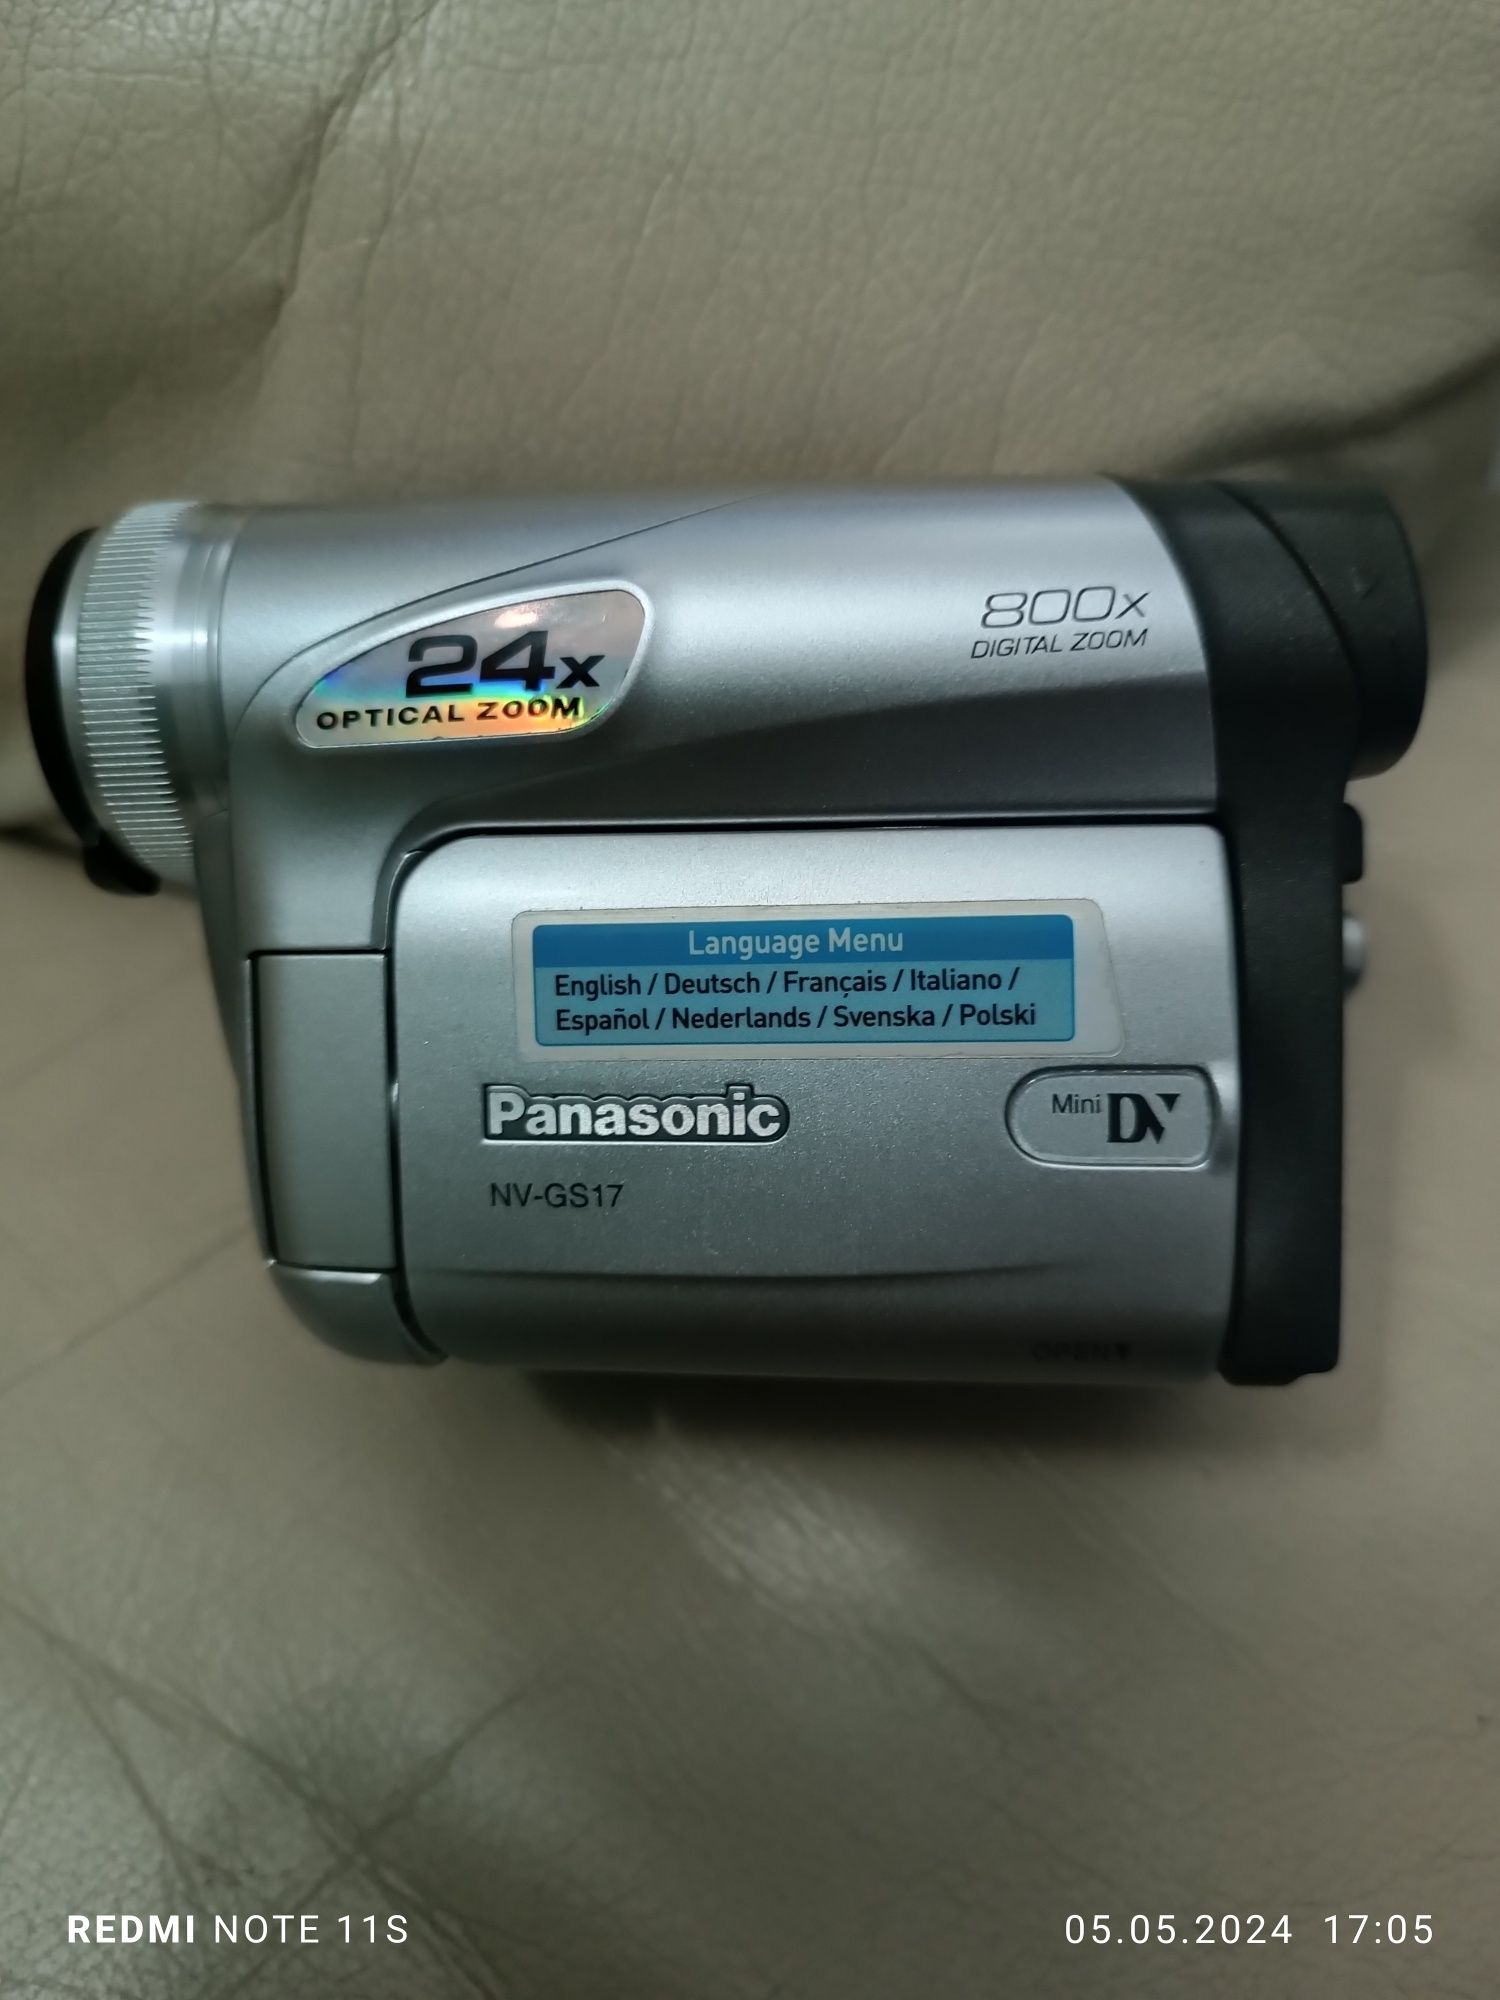 Panasonic 24 x optical zoom